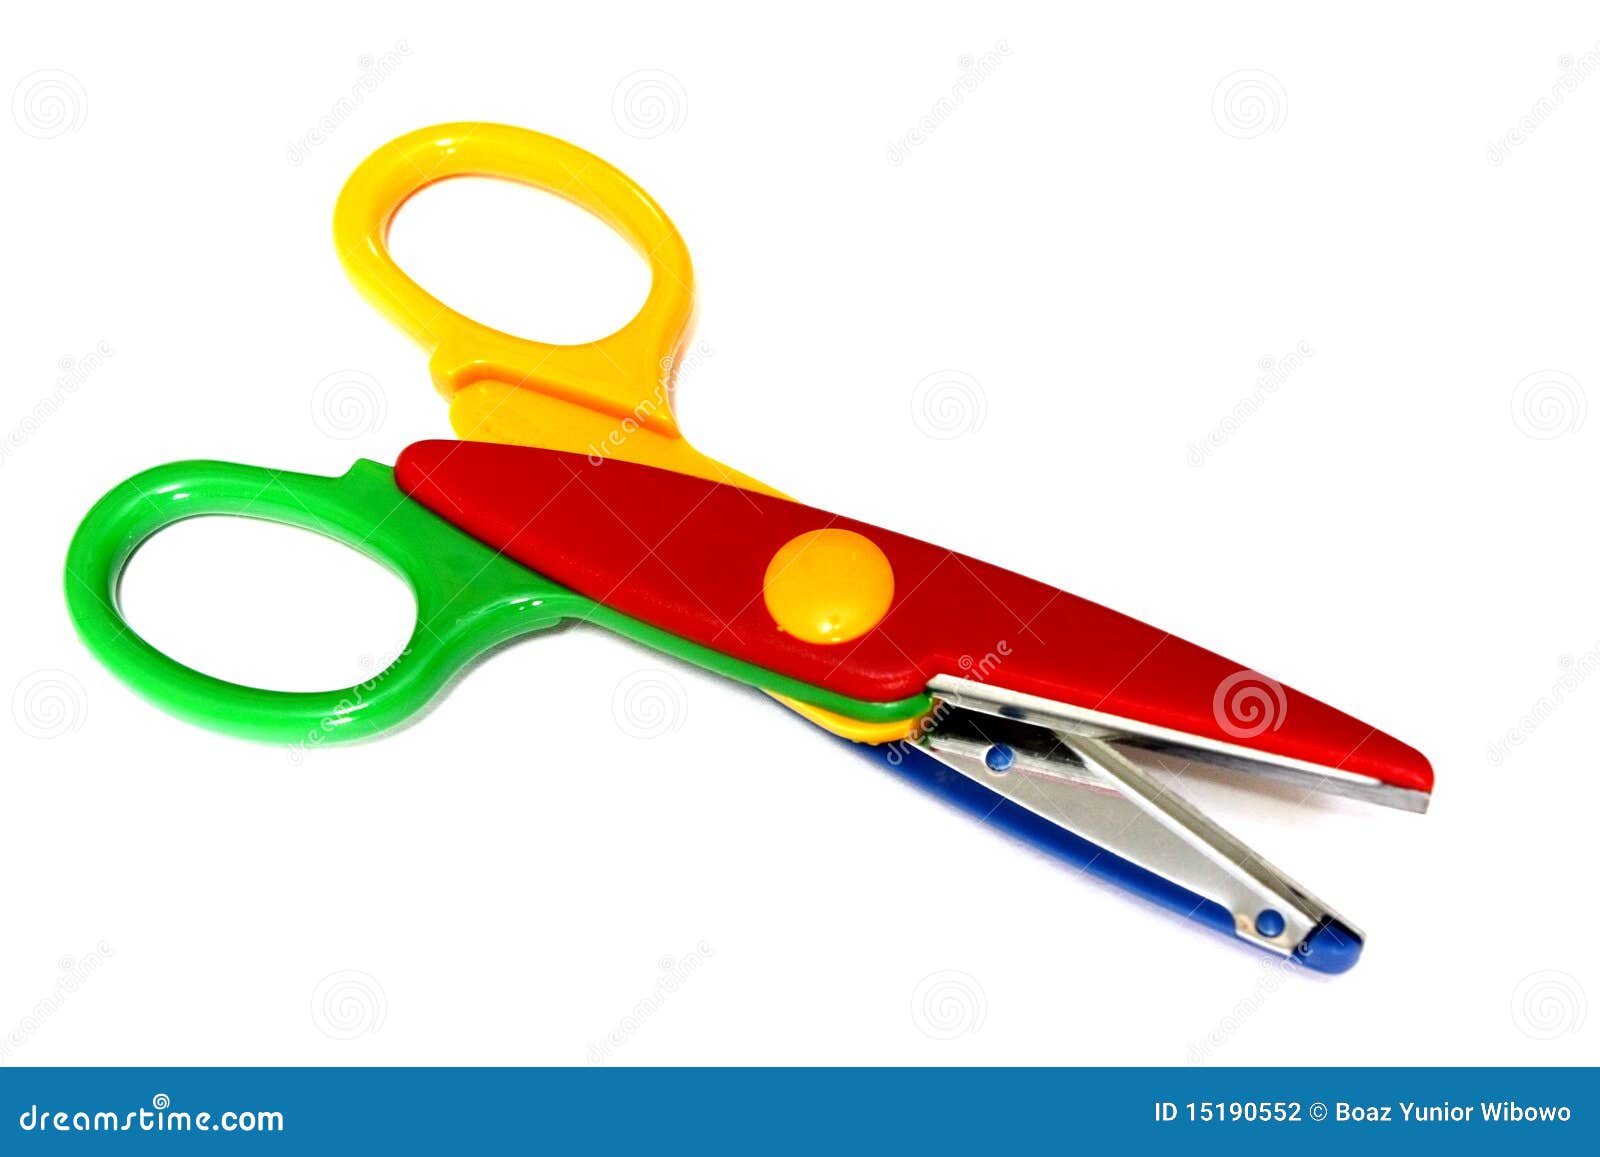 colorful scissor